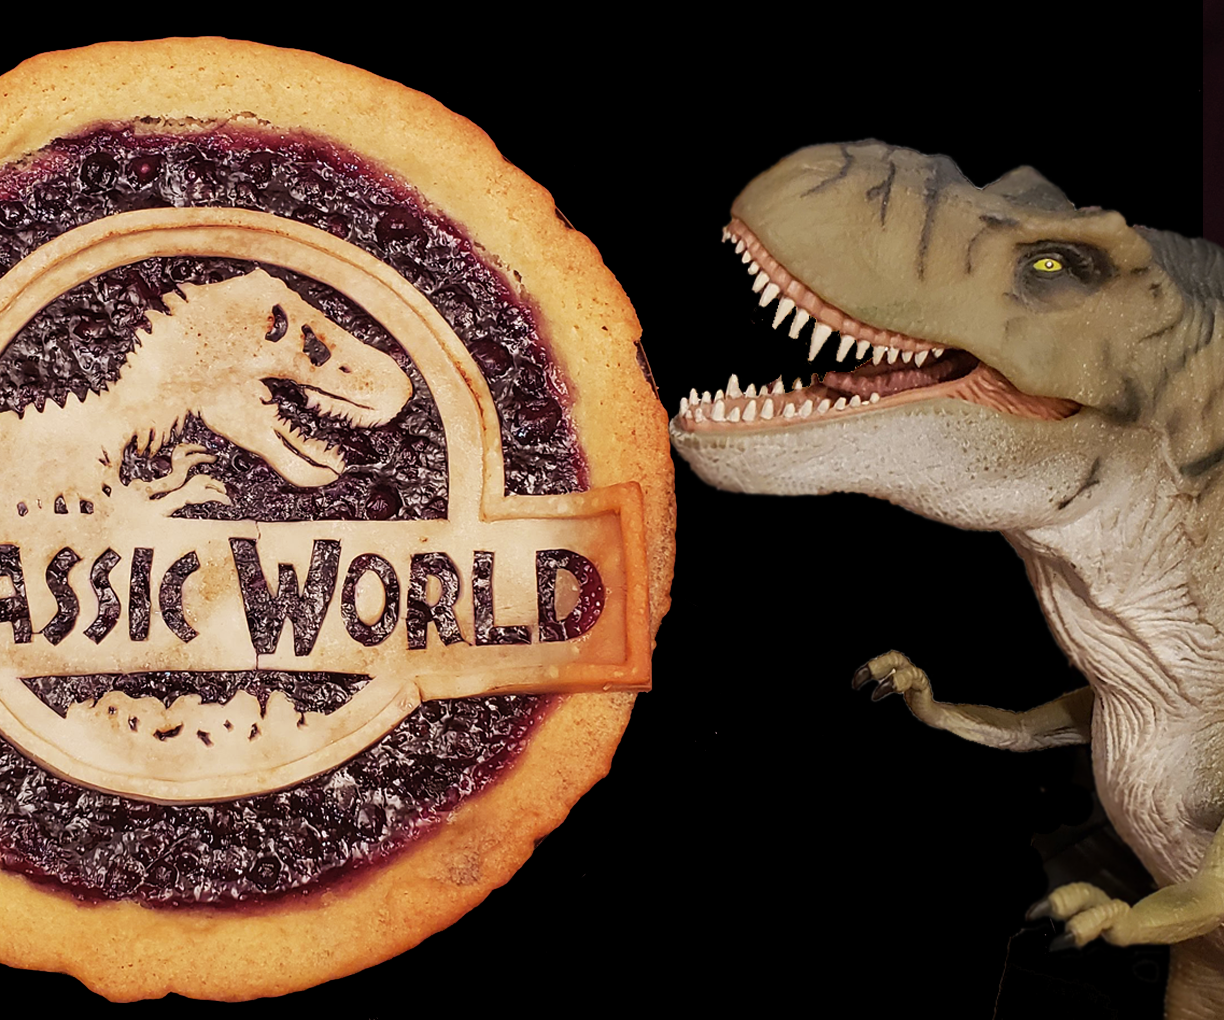 Blueberry Pie-rannosaurus: a Dino-mite Dessert!